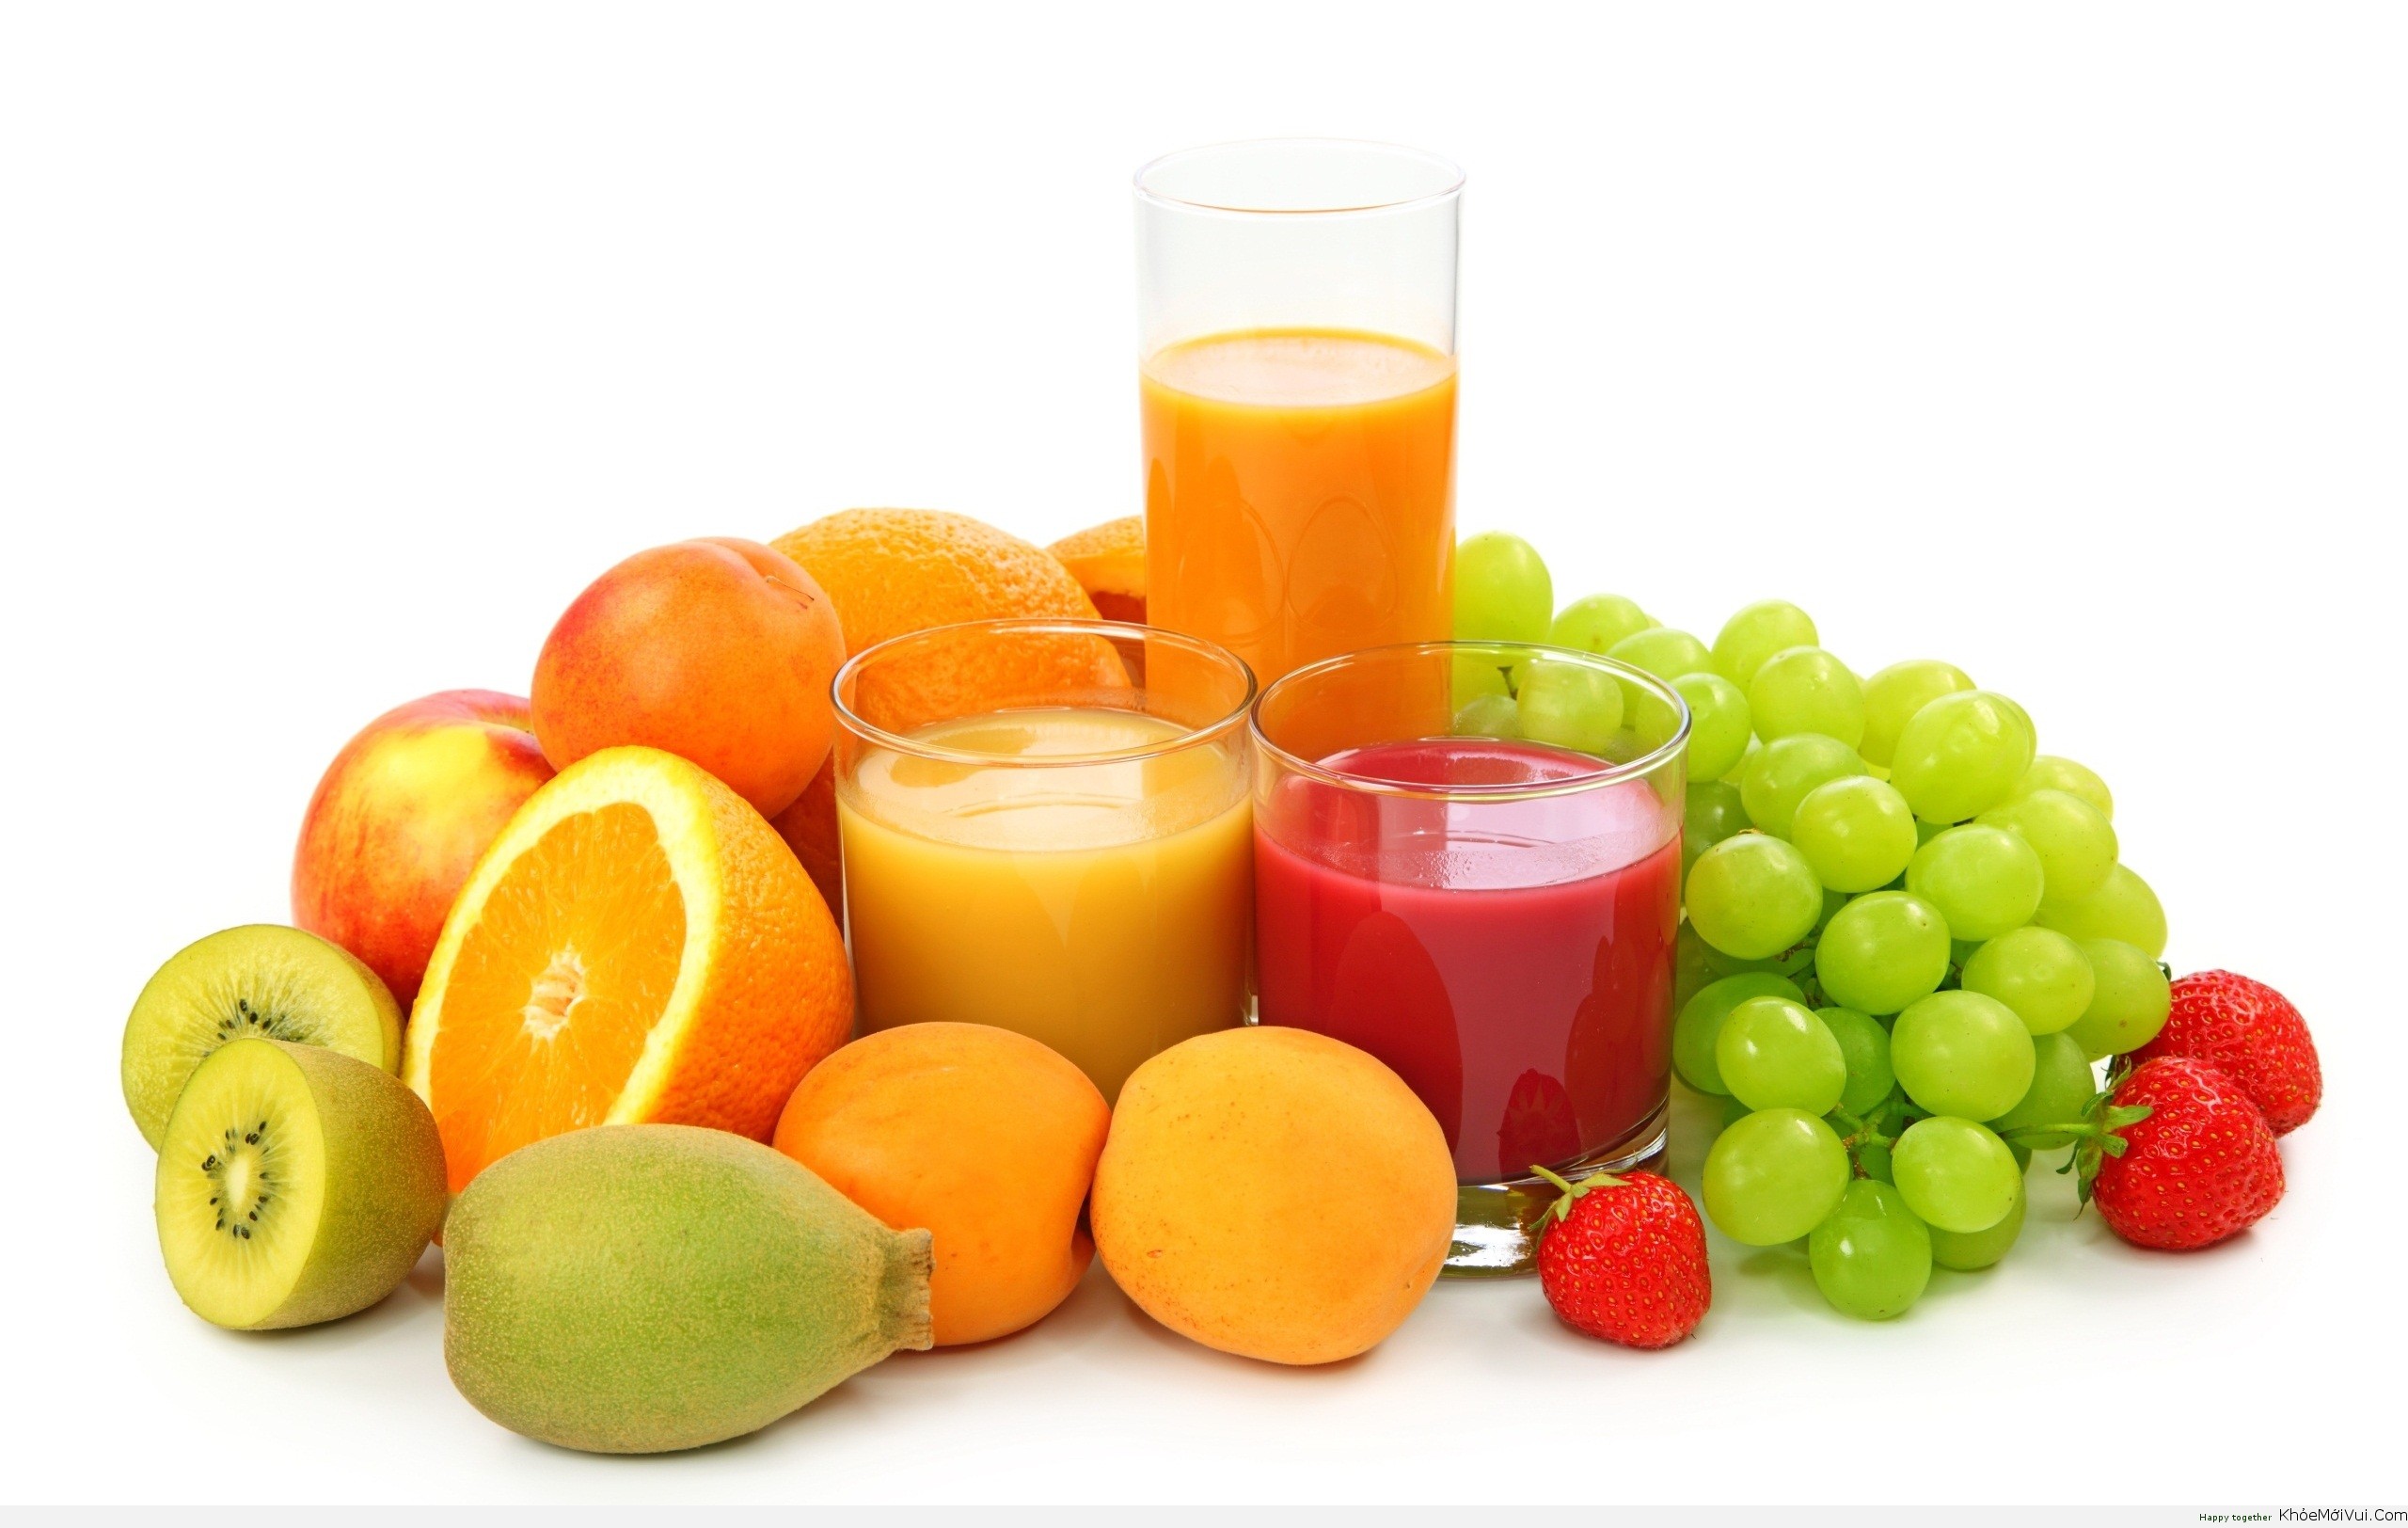   Uống quá nhiều nước ép hoa quả tươi không tốt cho sức khỏe  